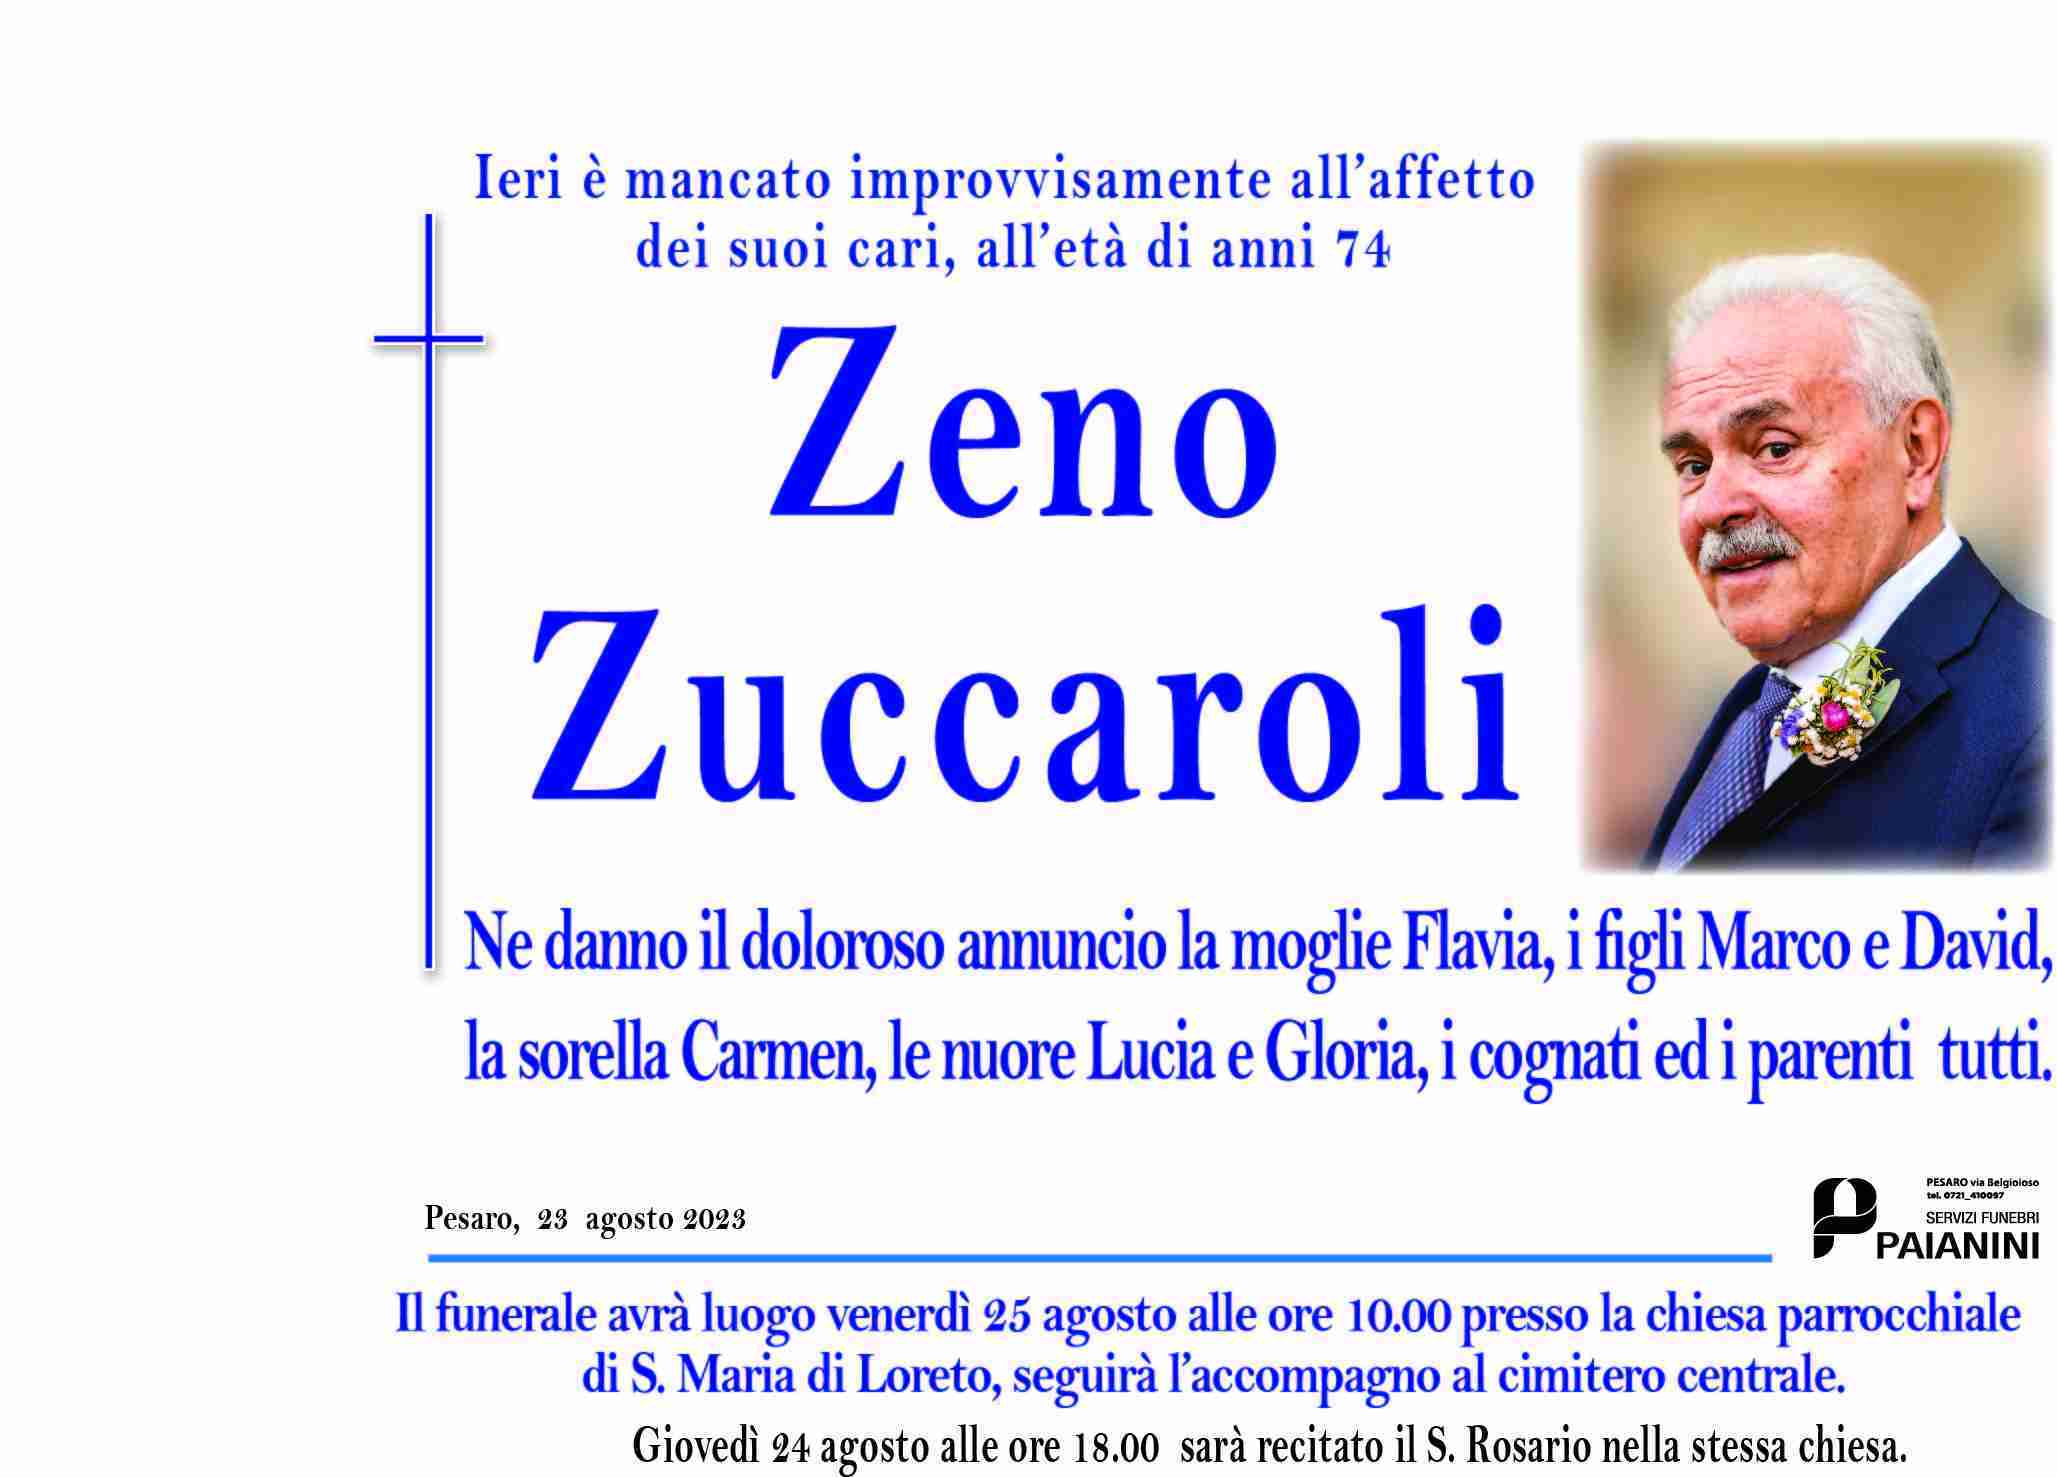 Zeno Zuccaroli